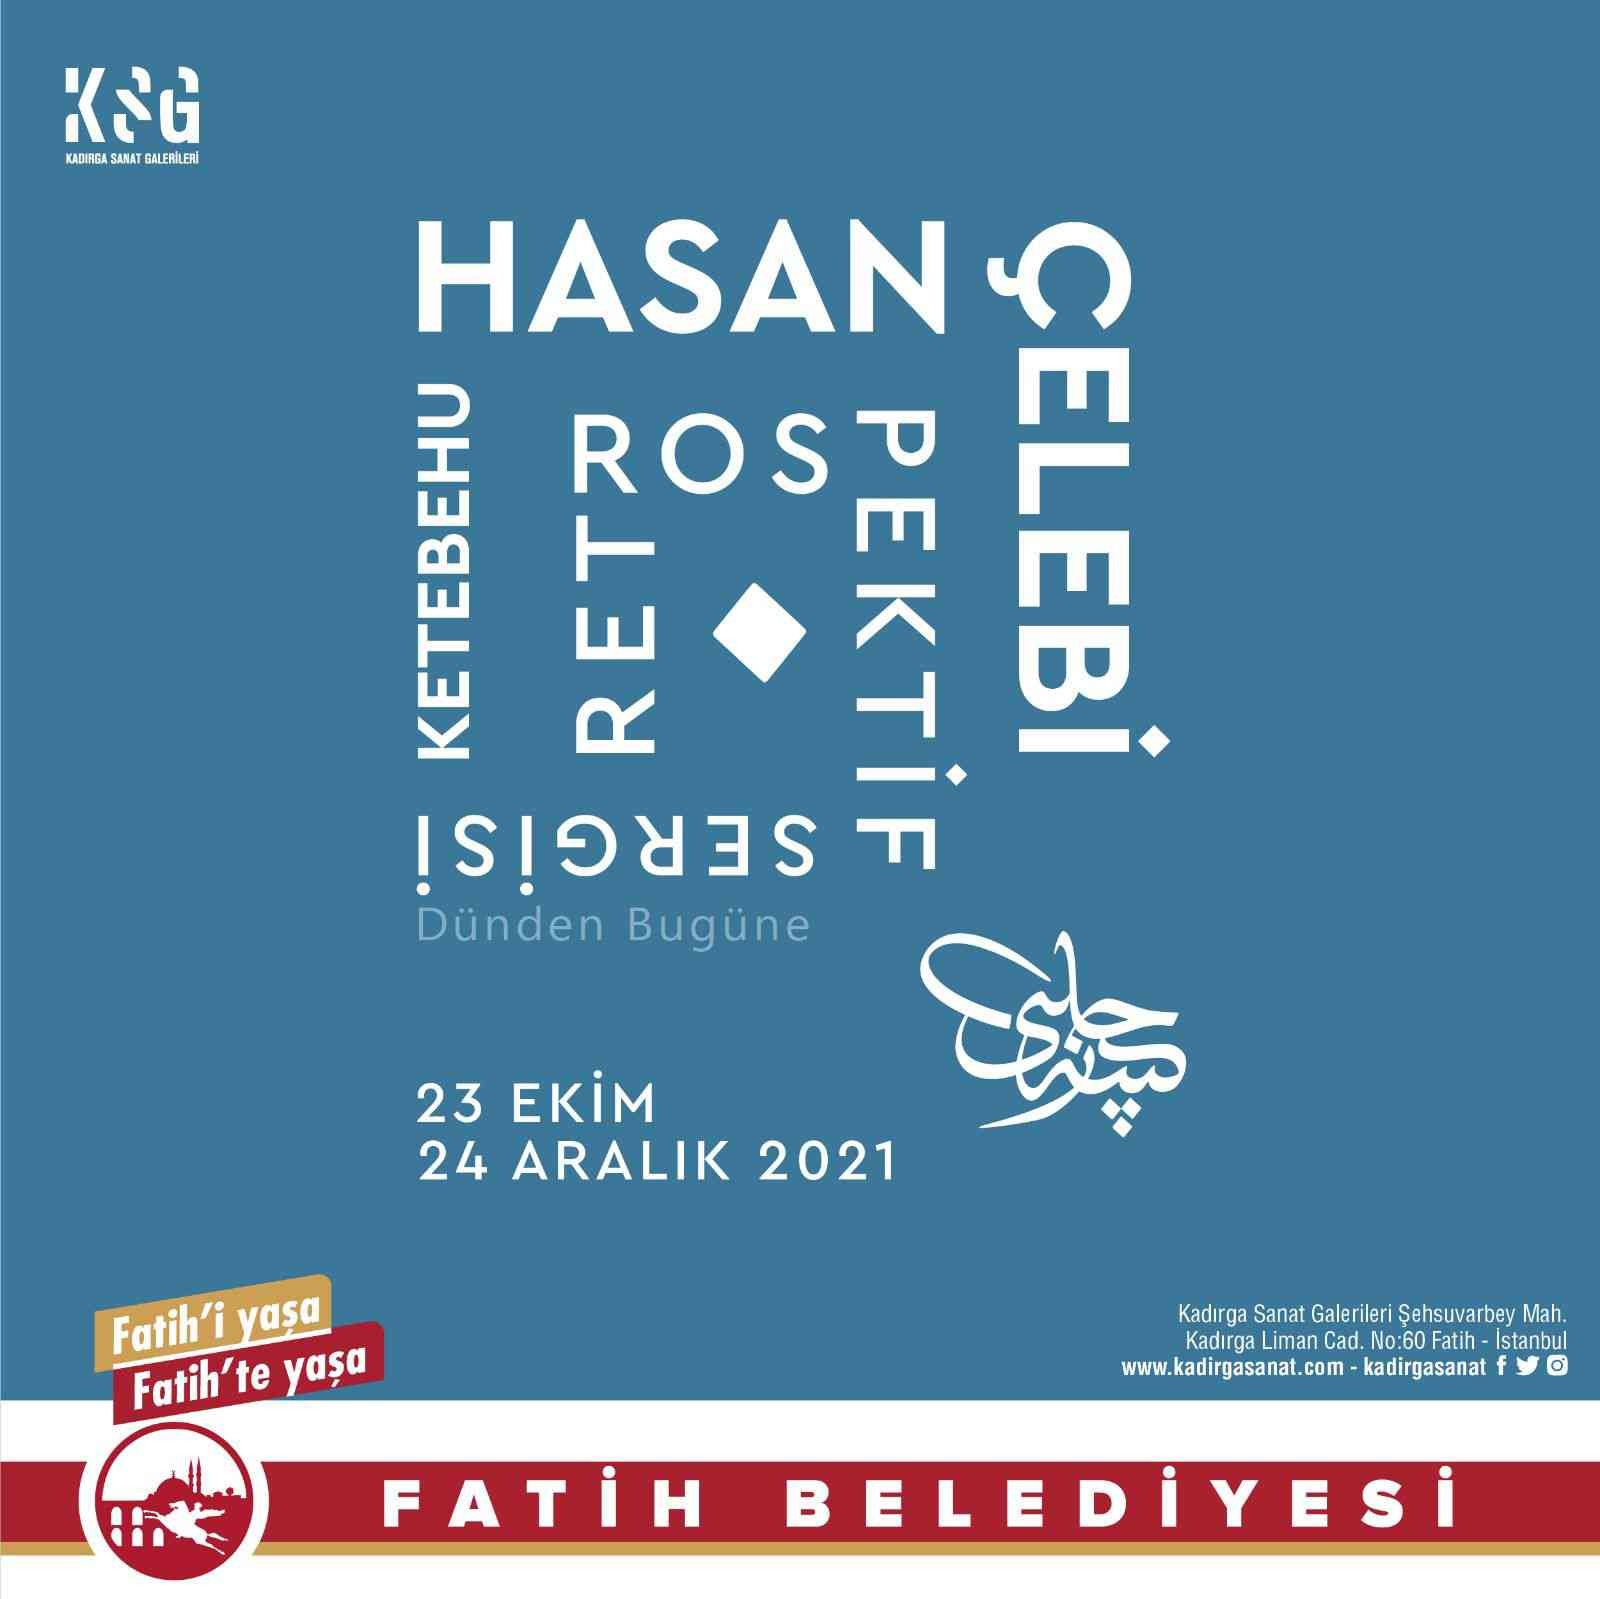 ‘Ketebehu Hasan Çelebi’nin eserleri sanatseverlerle buluşuyor #istanbul